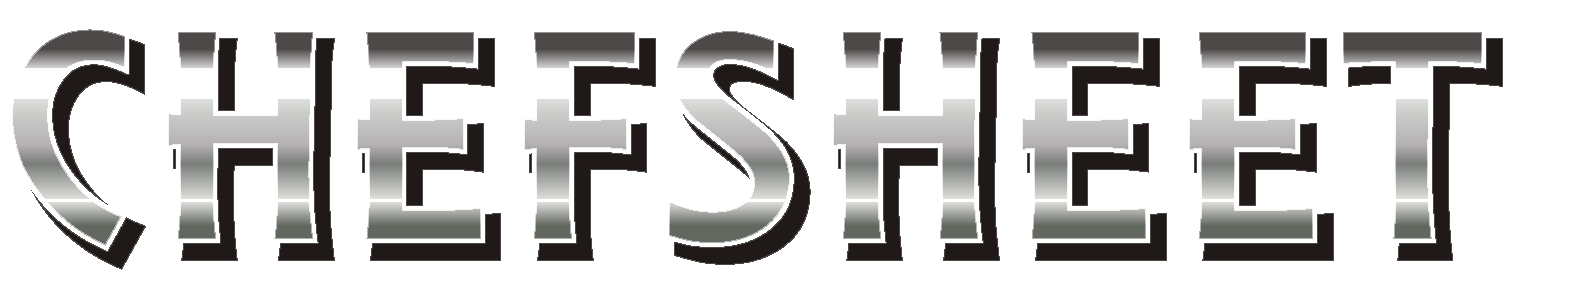 Signup_chefsheet_logo